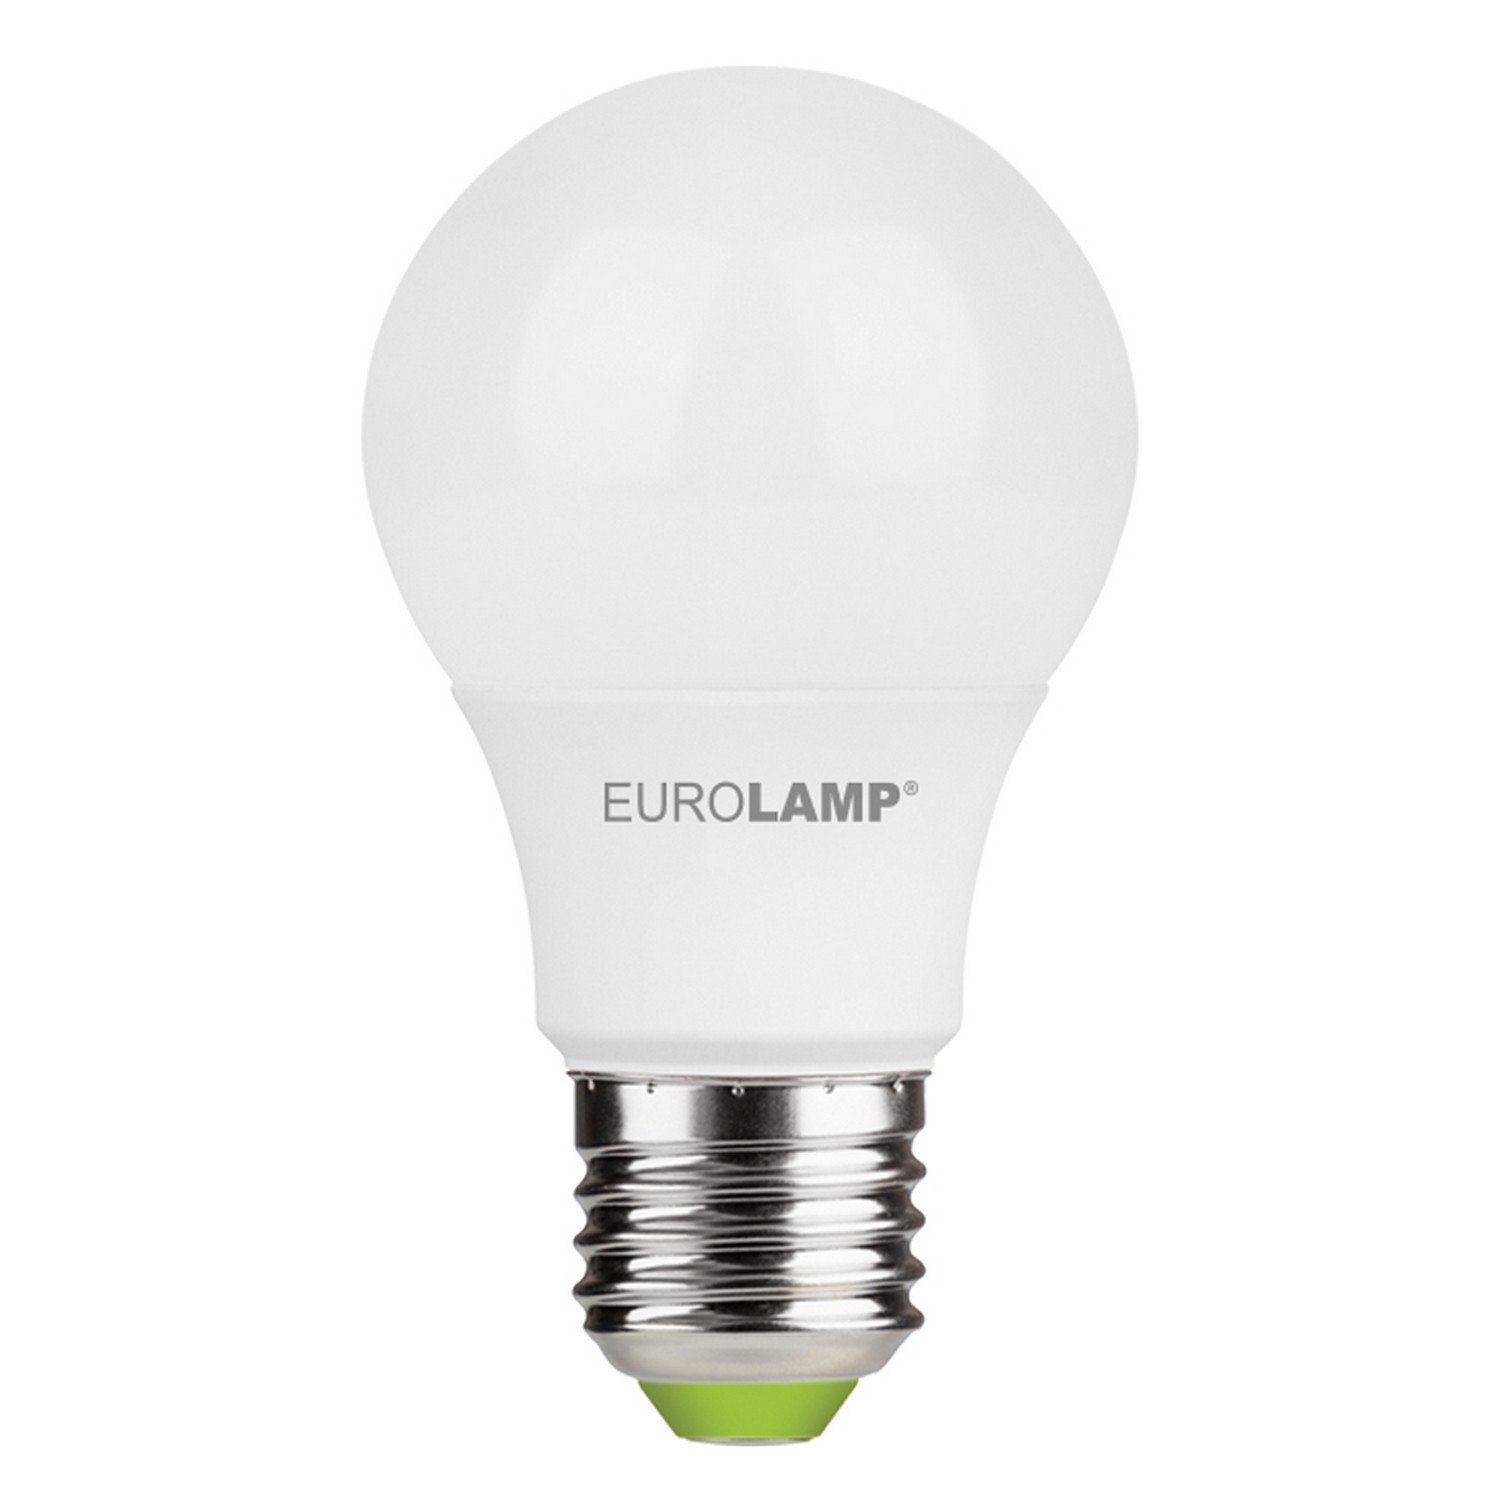 Лампа Eurolamp LED A60 7W E27 4000K акция "1+1" цена 99.00 грн - фотография 2